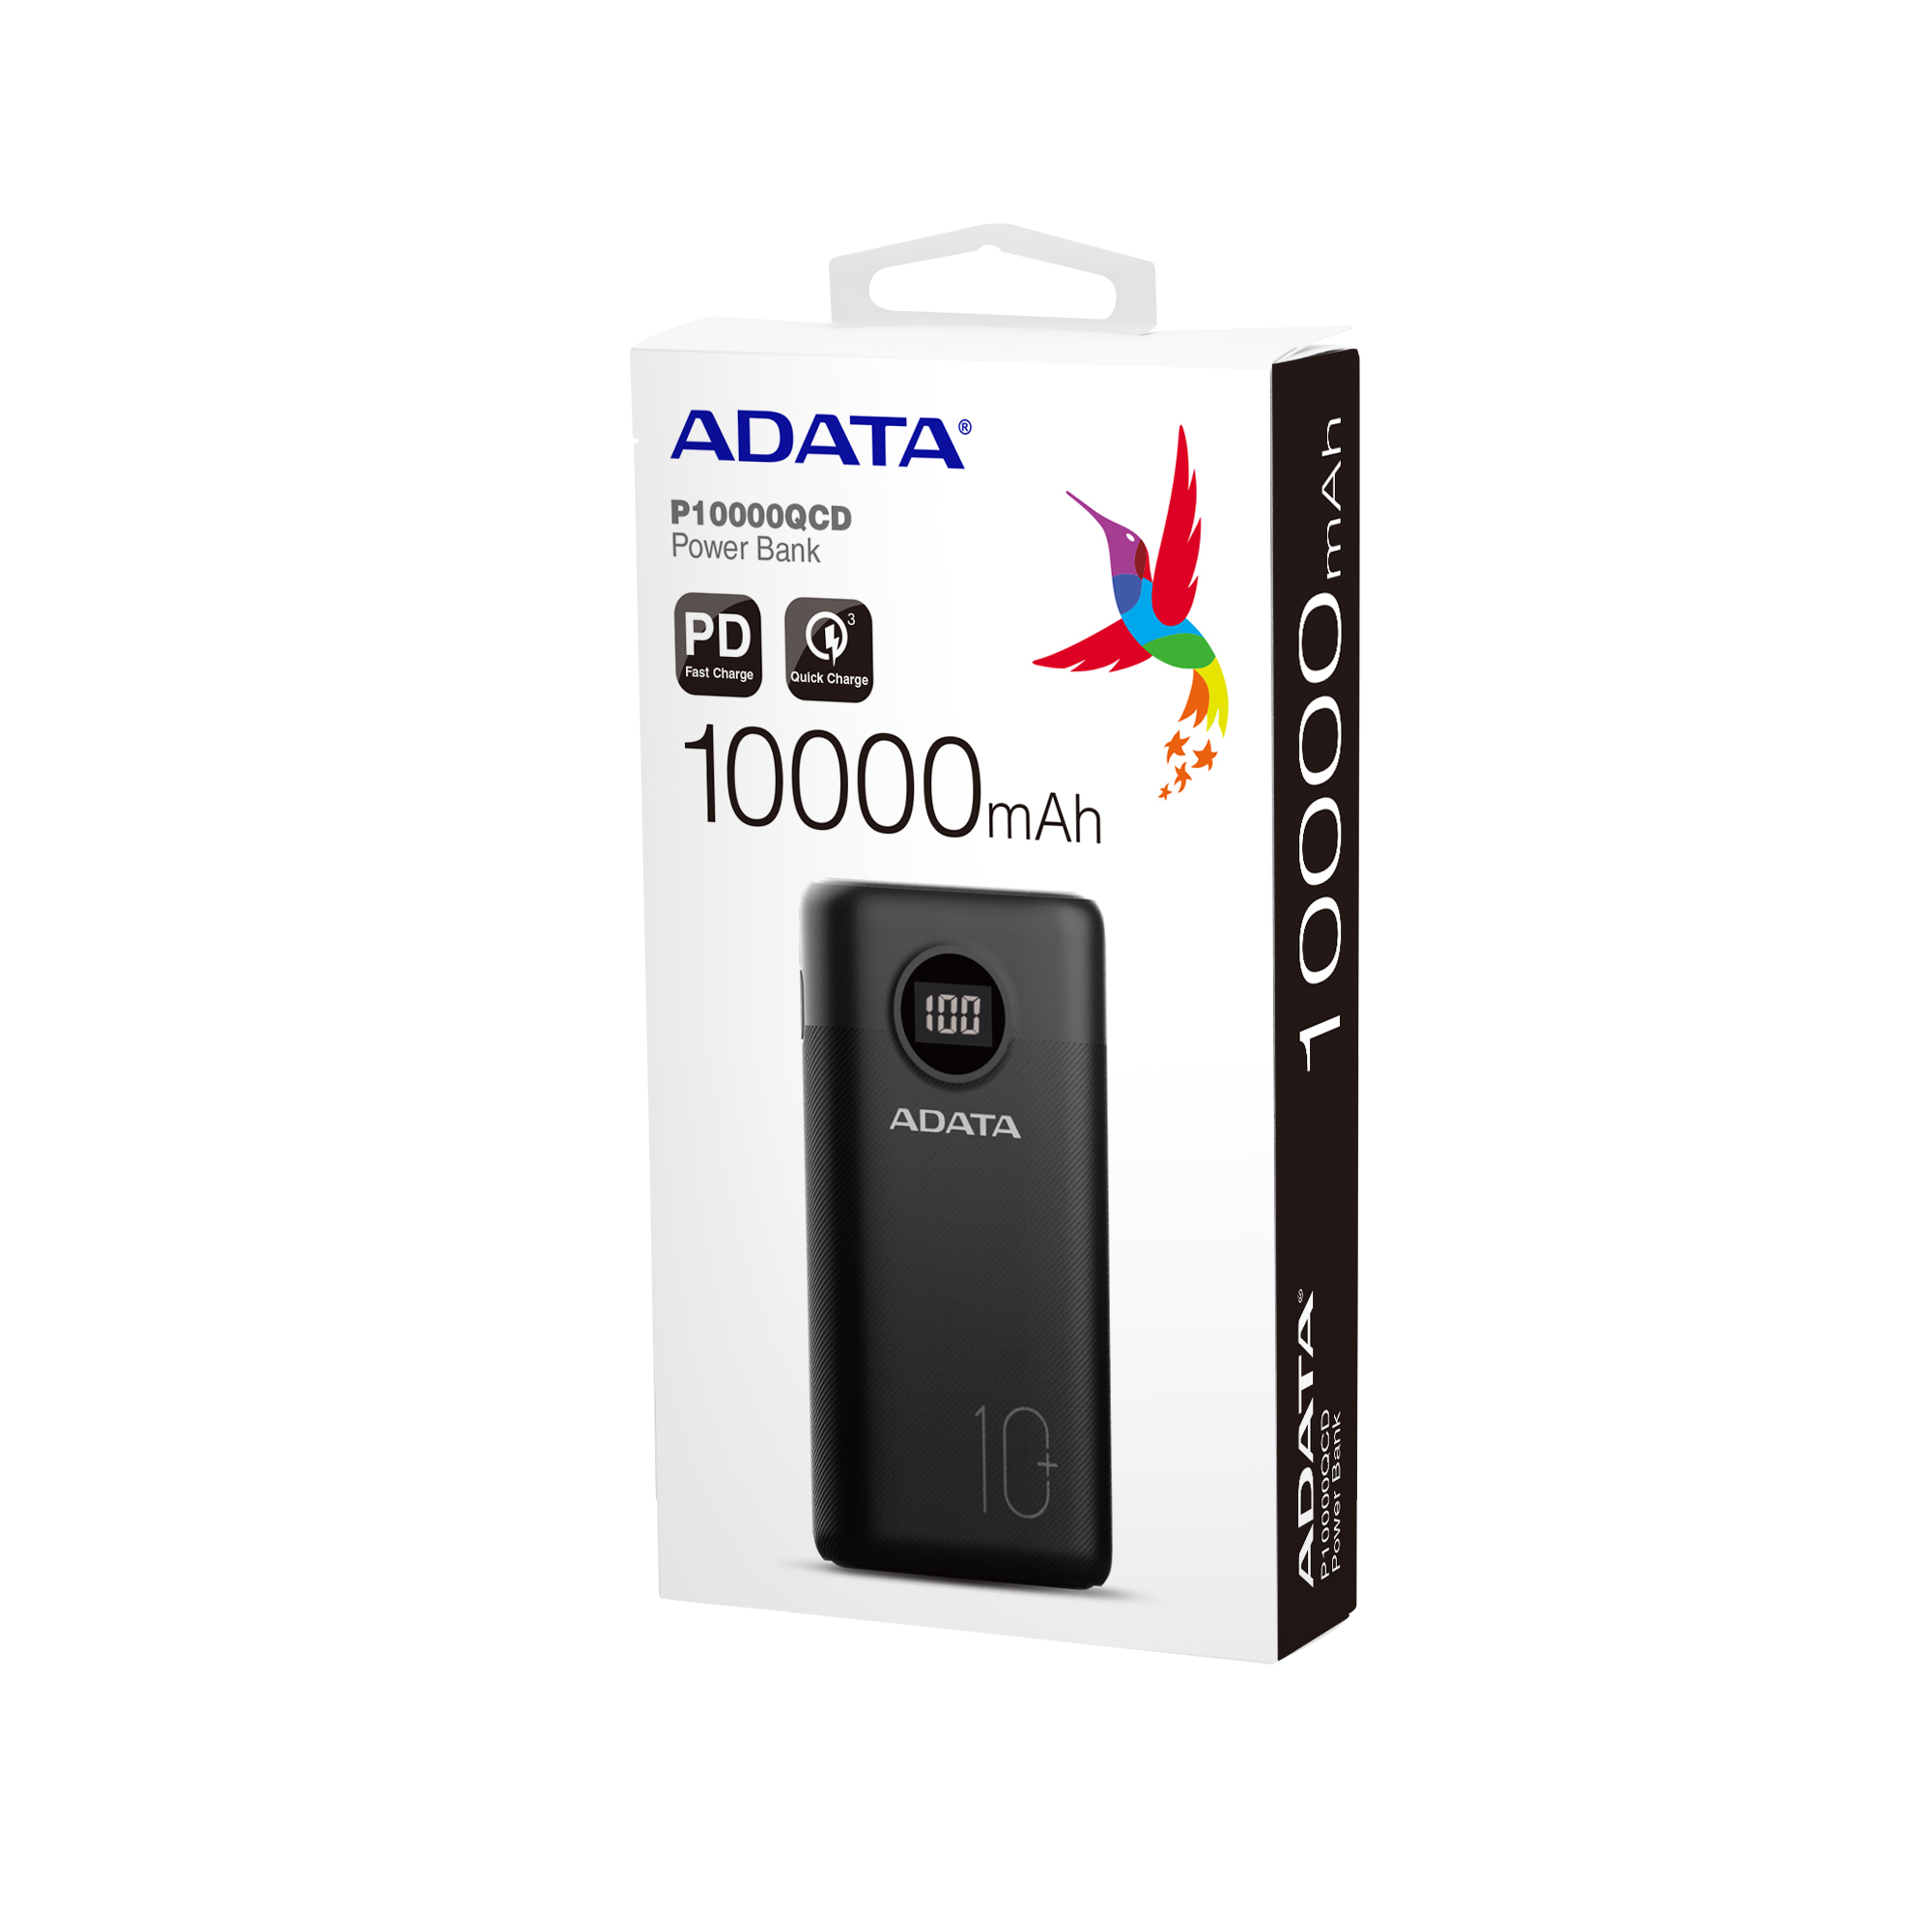 ADATA Powerbank Digital Batería Portátil P1000QCD, 10,000 mAh, Carga Rápida, Color Negro